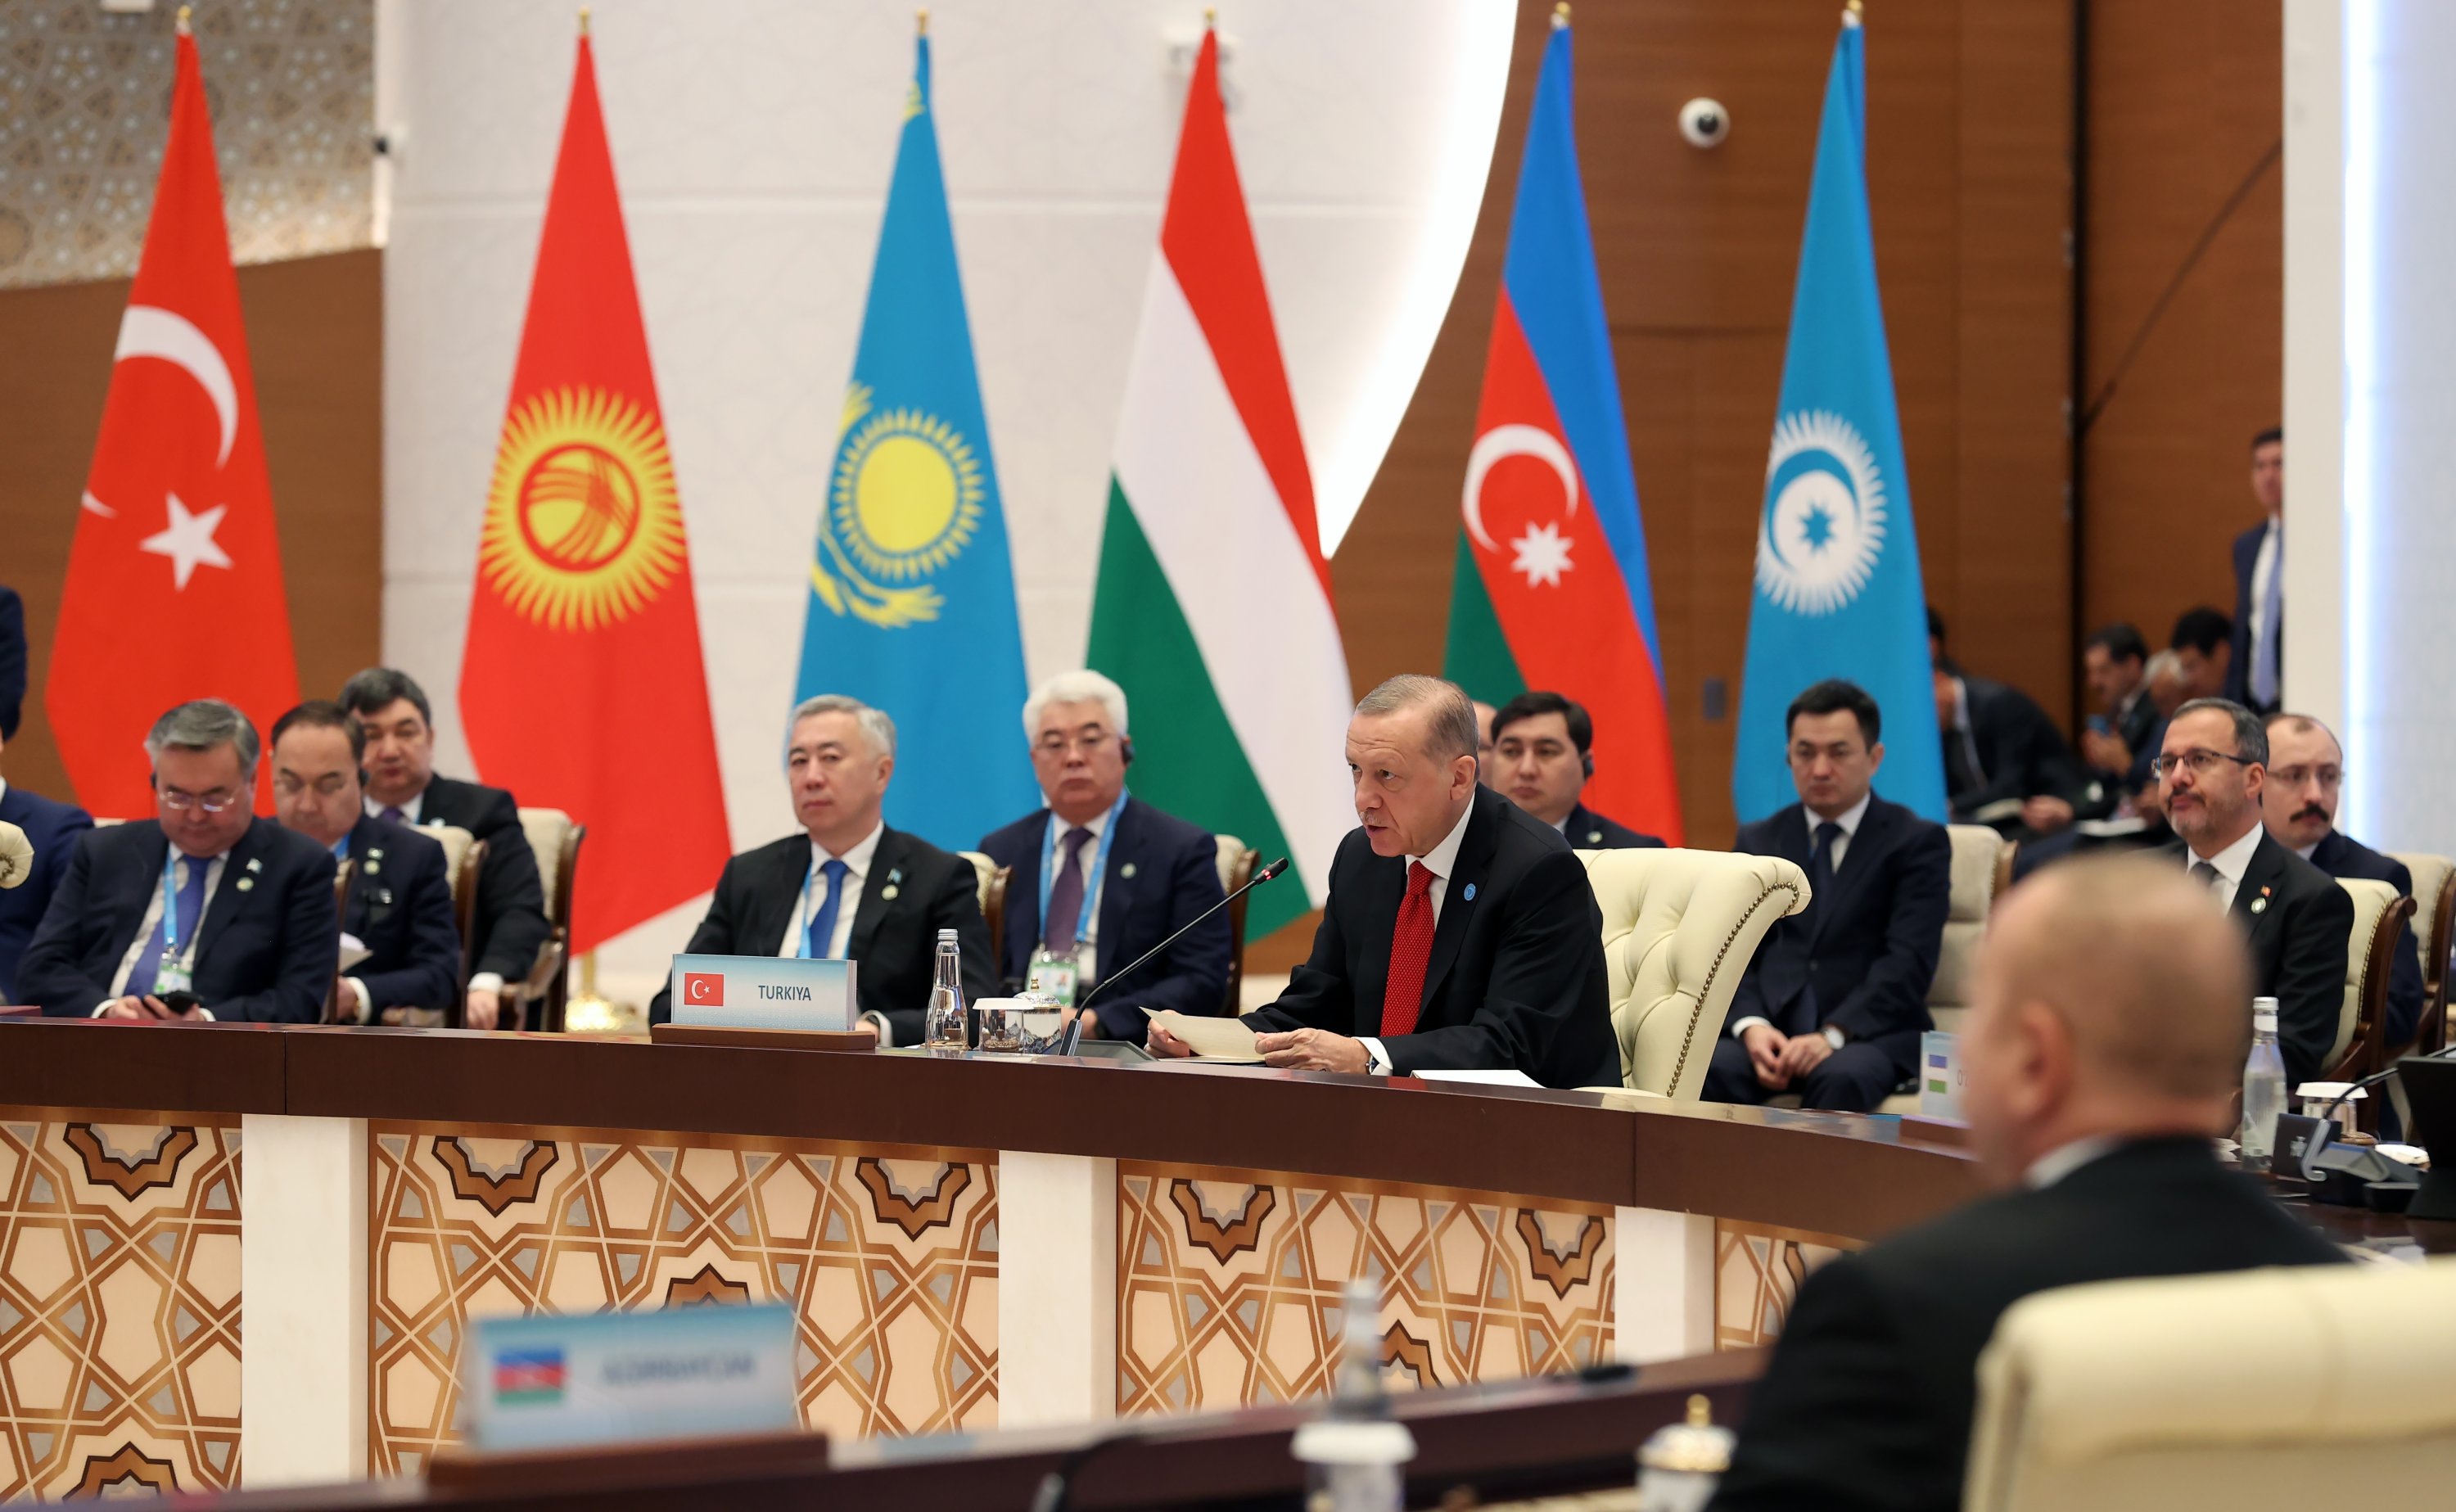   Präsident Ilham Aliyev nimmt an einer Baumpflanzzeremonie in Samarkand teil  